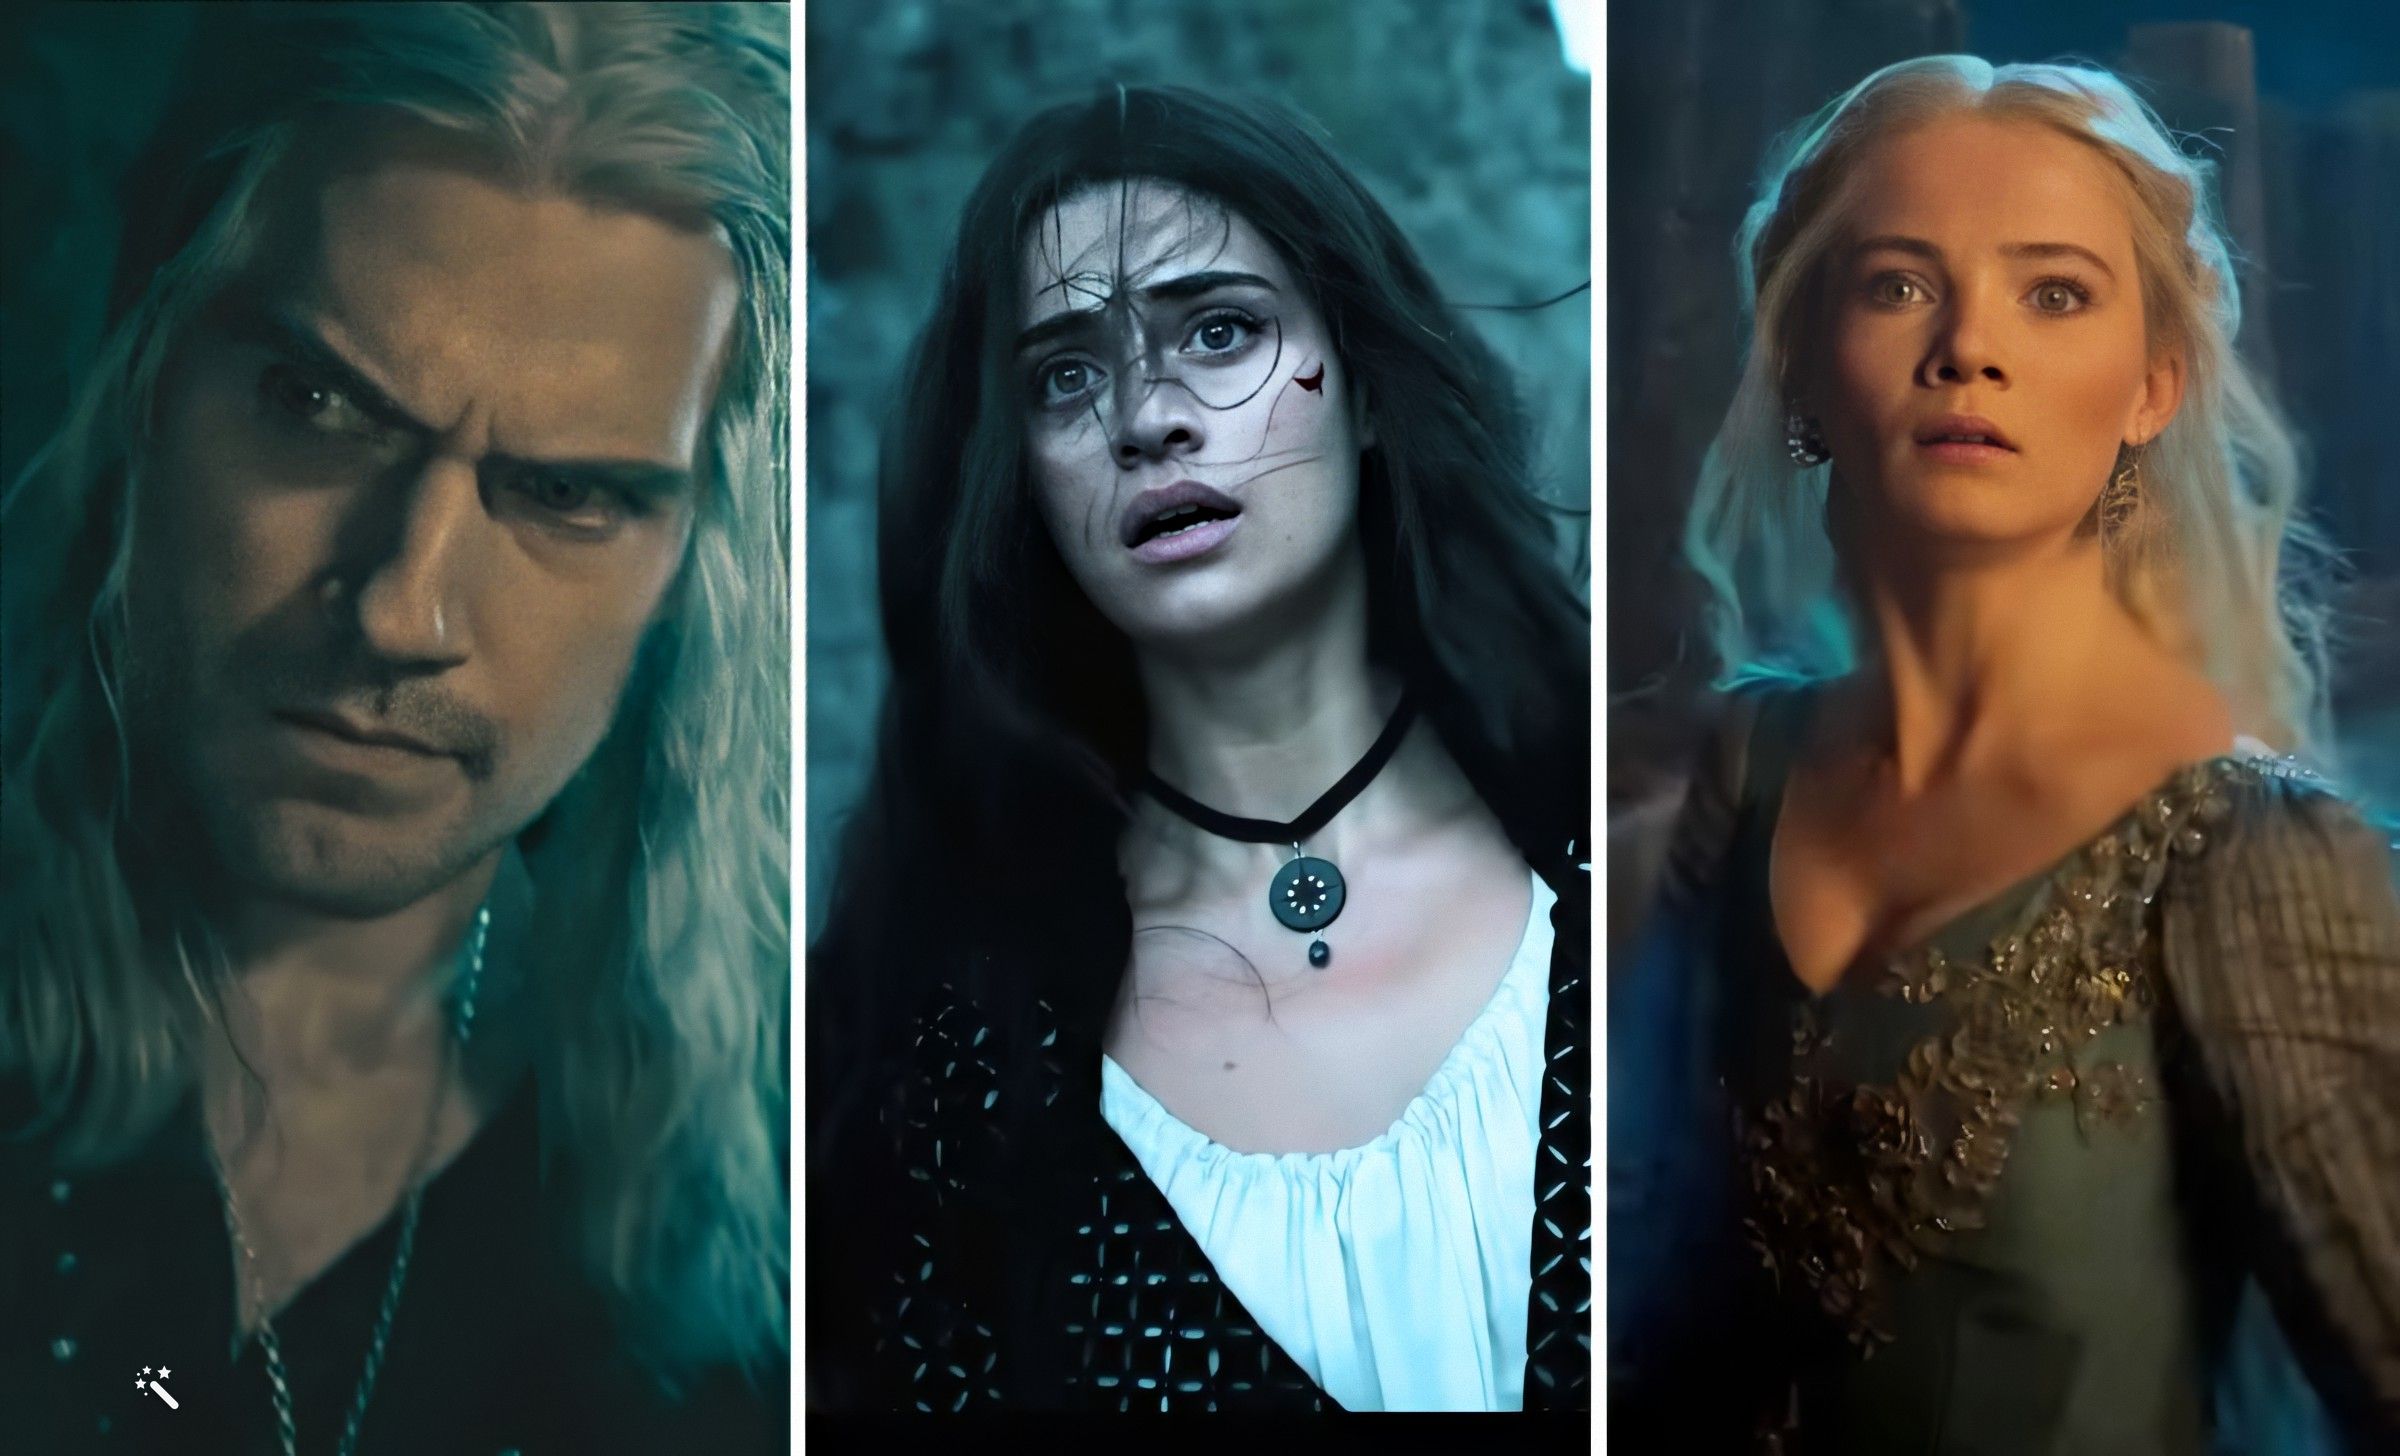 The Witcher, temporada 3 - Fecha de estreno, tráiler y todo lo que sabemos  de la serie de Netflix con Henry Cavill